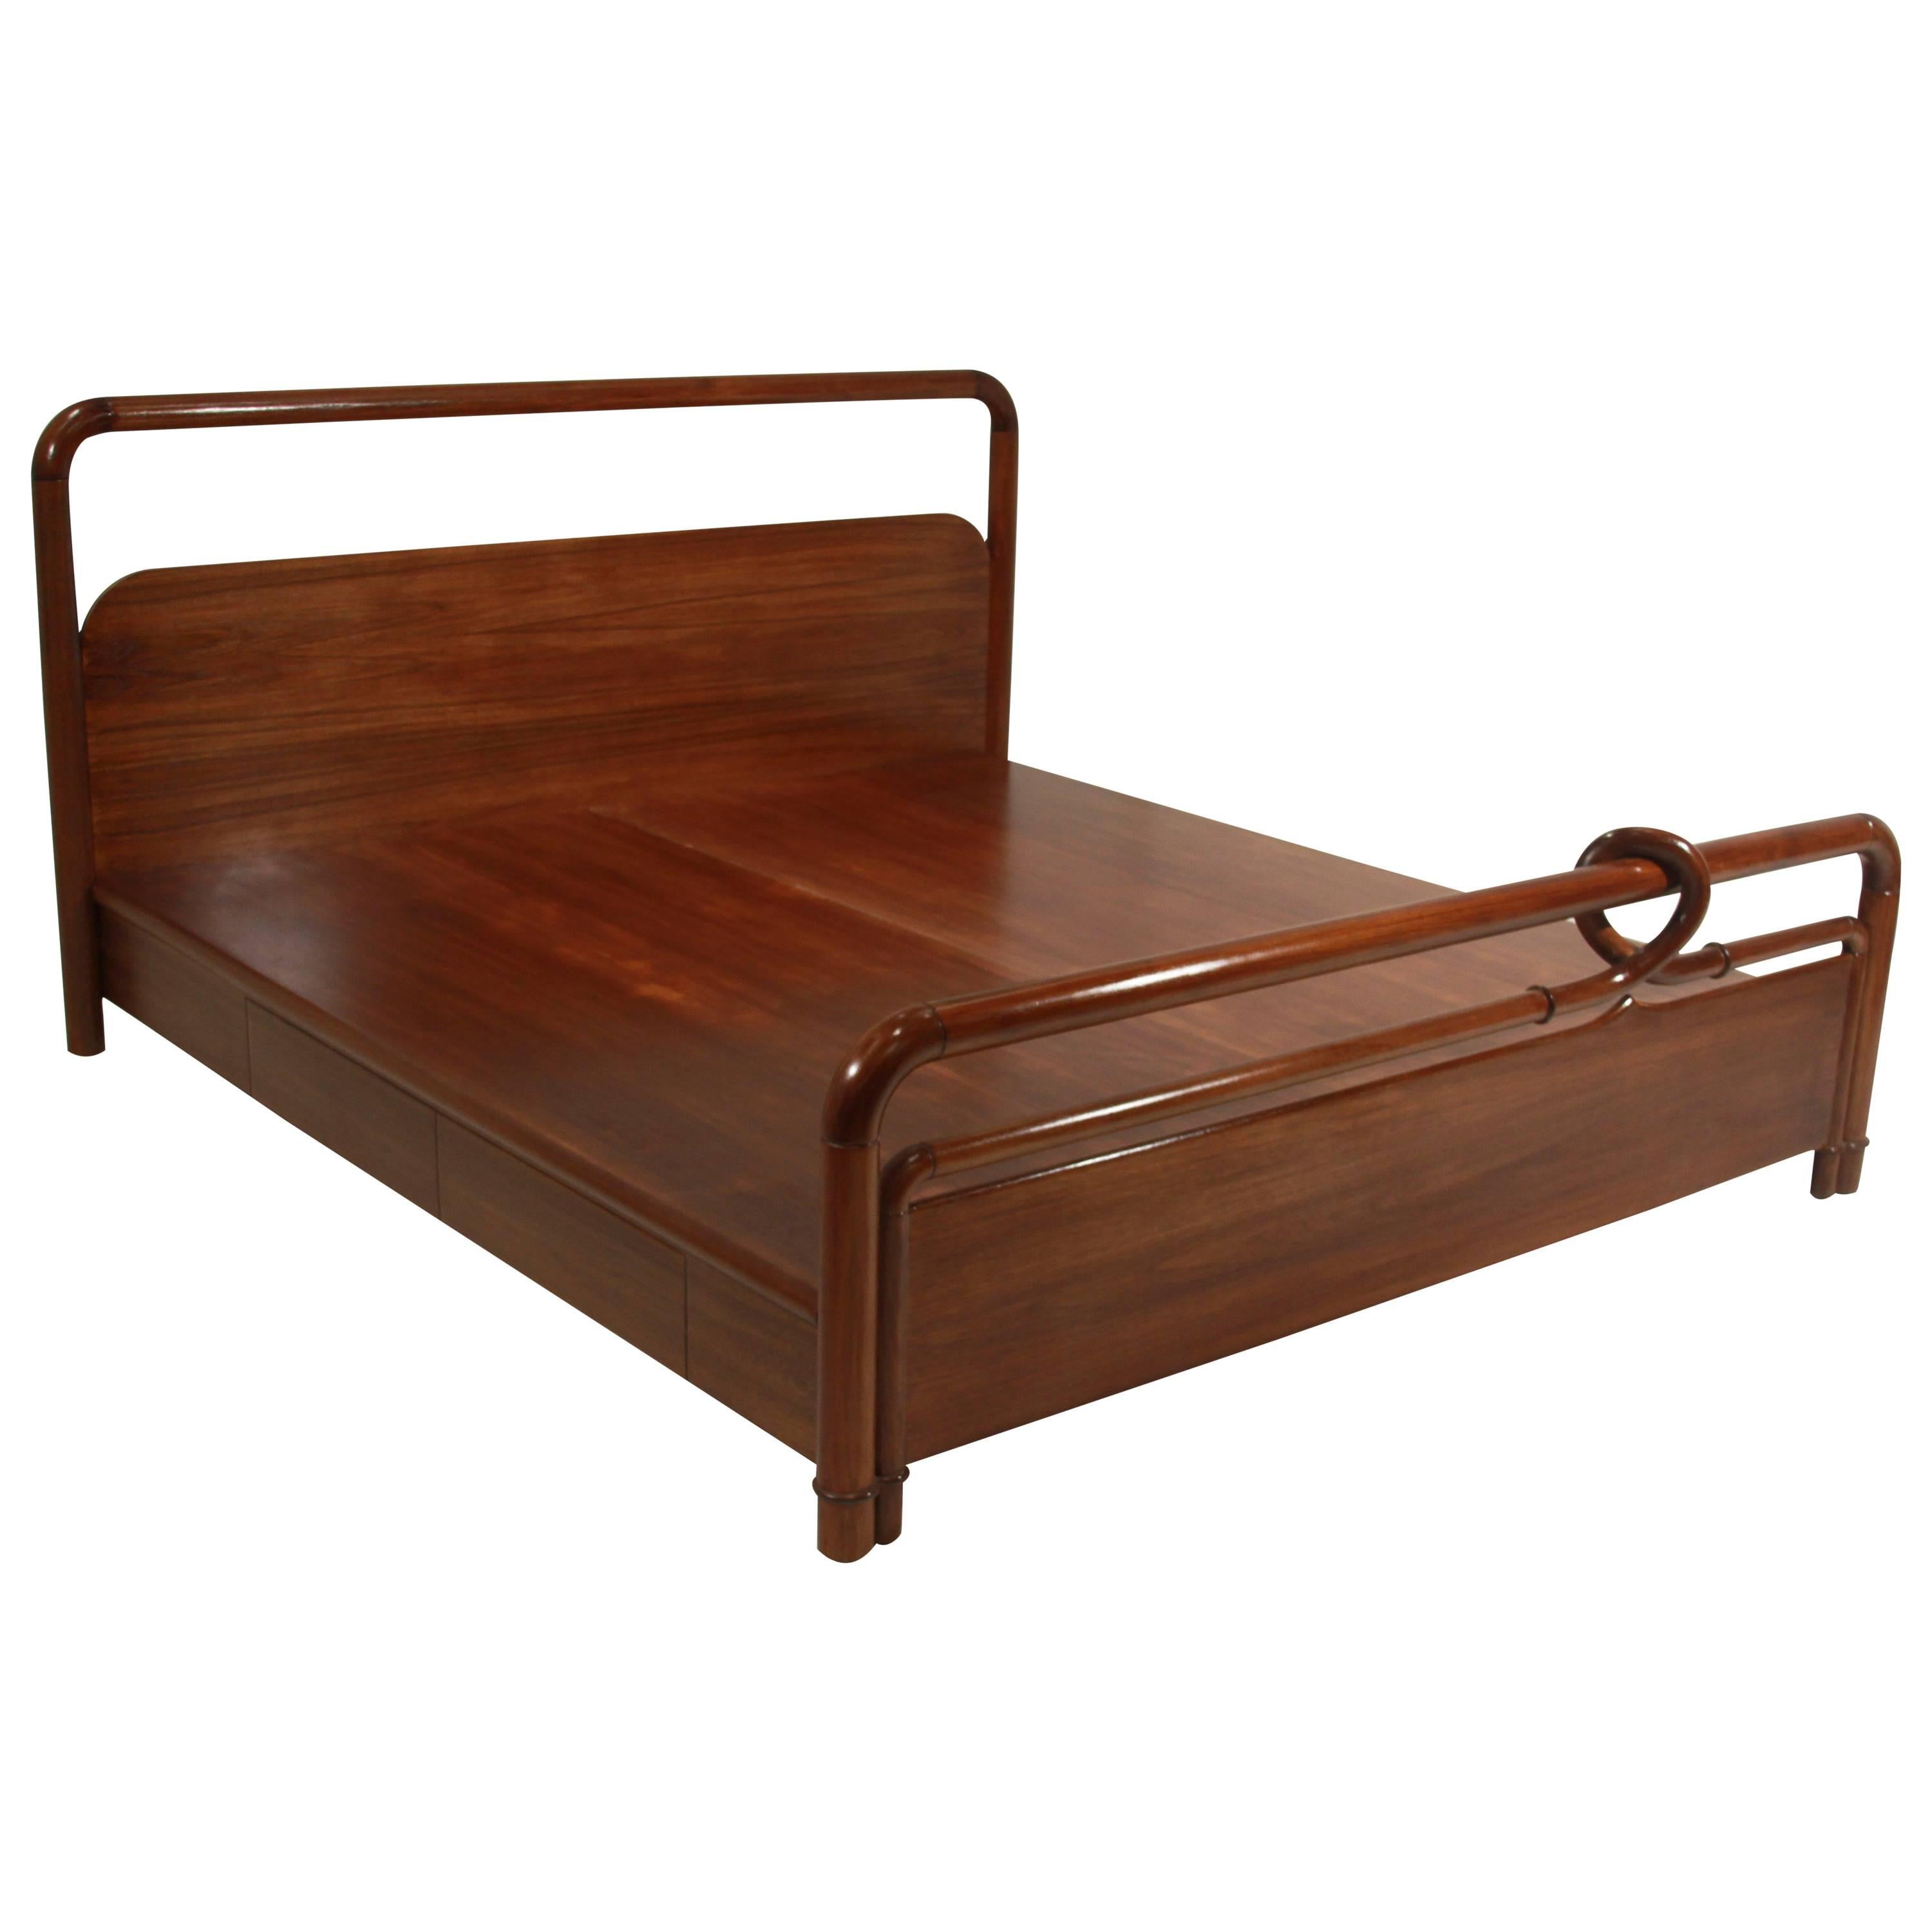 Carved Teak and Bentwood Craftsman Revolution Style Platform Bed For Sale